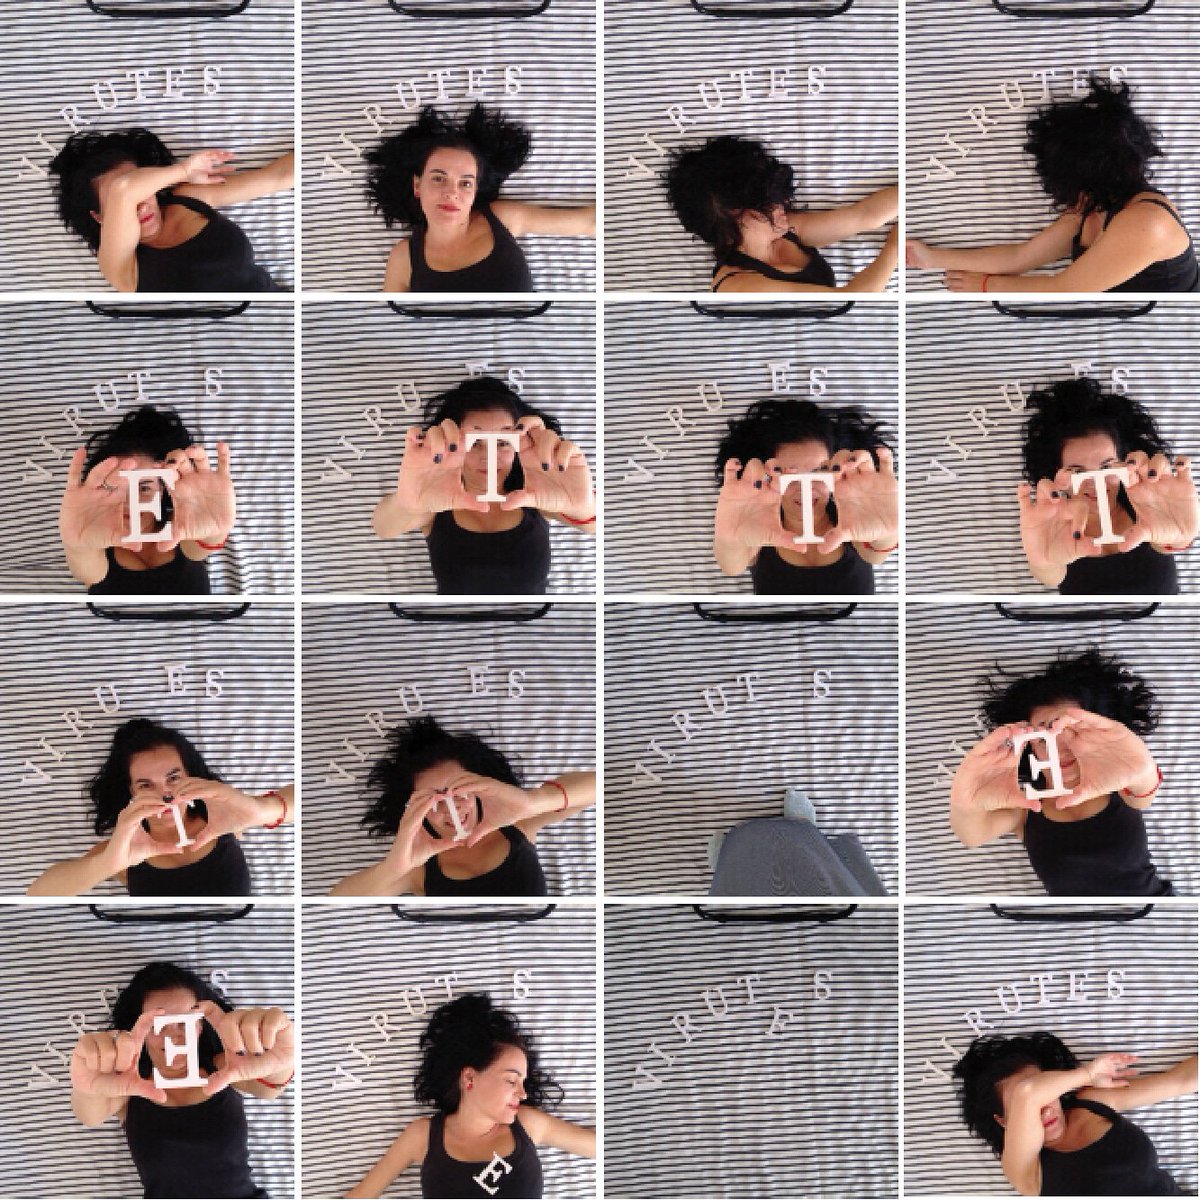 · MAKING OF ·

Pues nada, así es mi día de influencer 😂, 200 fotos para escoger una.

Feliz día 💖.

#selfie #yomisma #makeinoff #fotos #disparos #retratos #emprenderenfemenino #emprendedora #trabajo #fotografia #photo #diseñadoragrafica #publicidad #bocetos #etsy #etsyshop